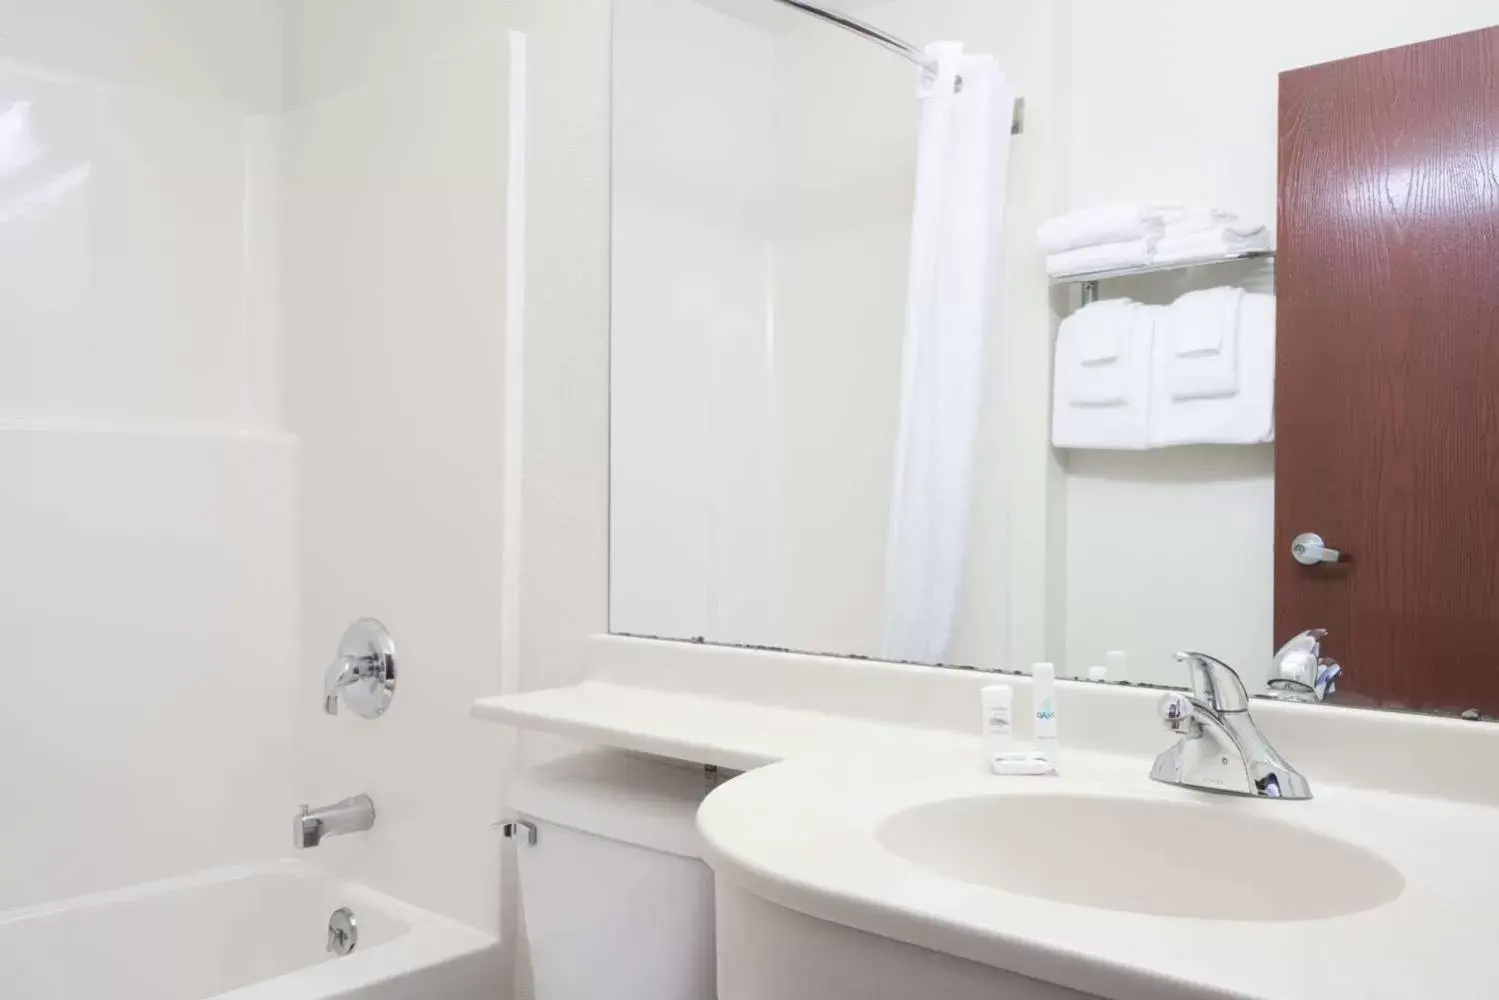 Bathroom in Microtel Inn & Suites by Wyndham Rice Lake